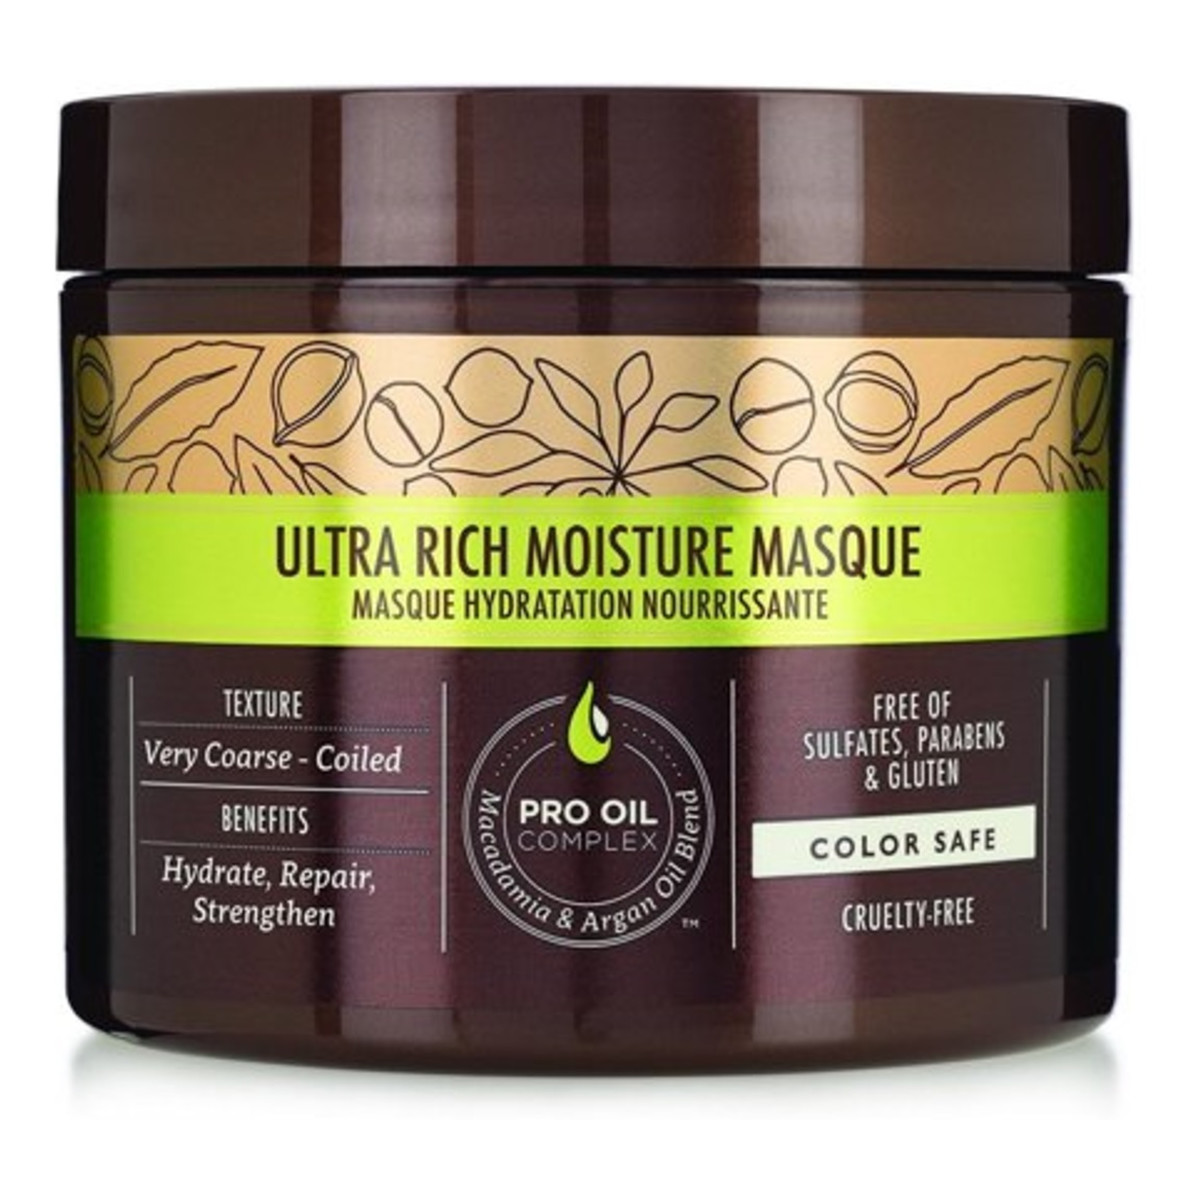 Macadamia Professional Ultra rich moisture masque nawilżająca maska do włosów grubych 60ml